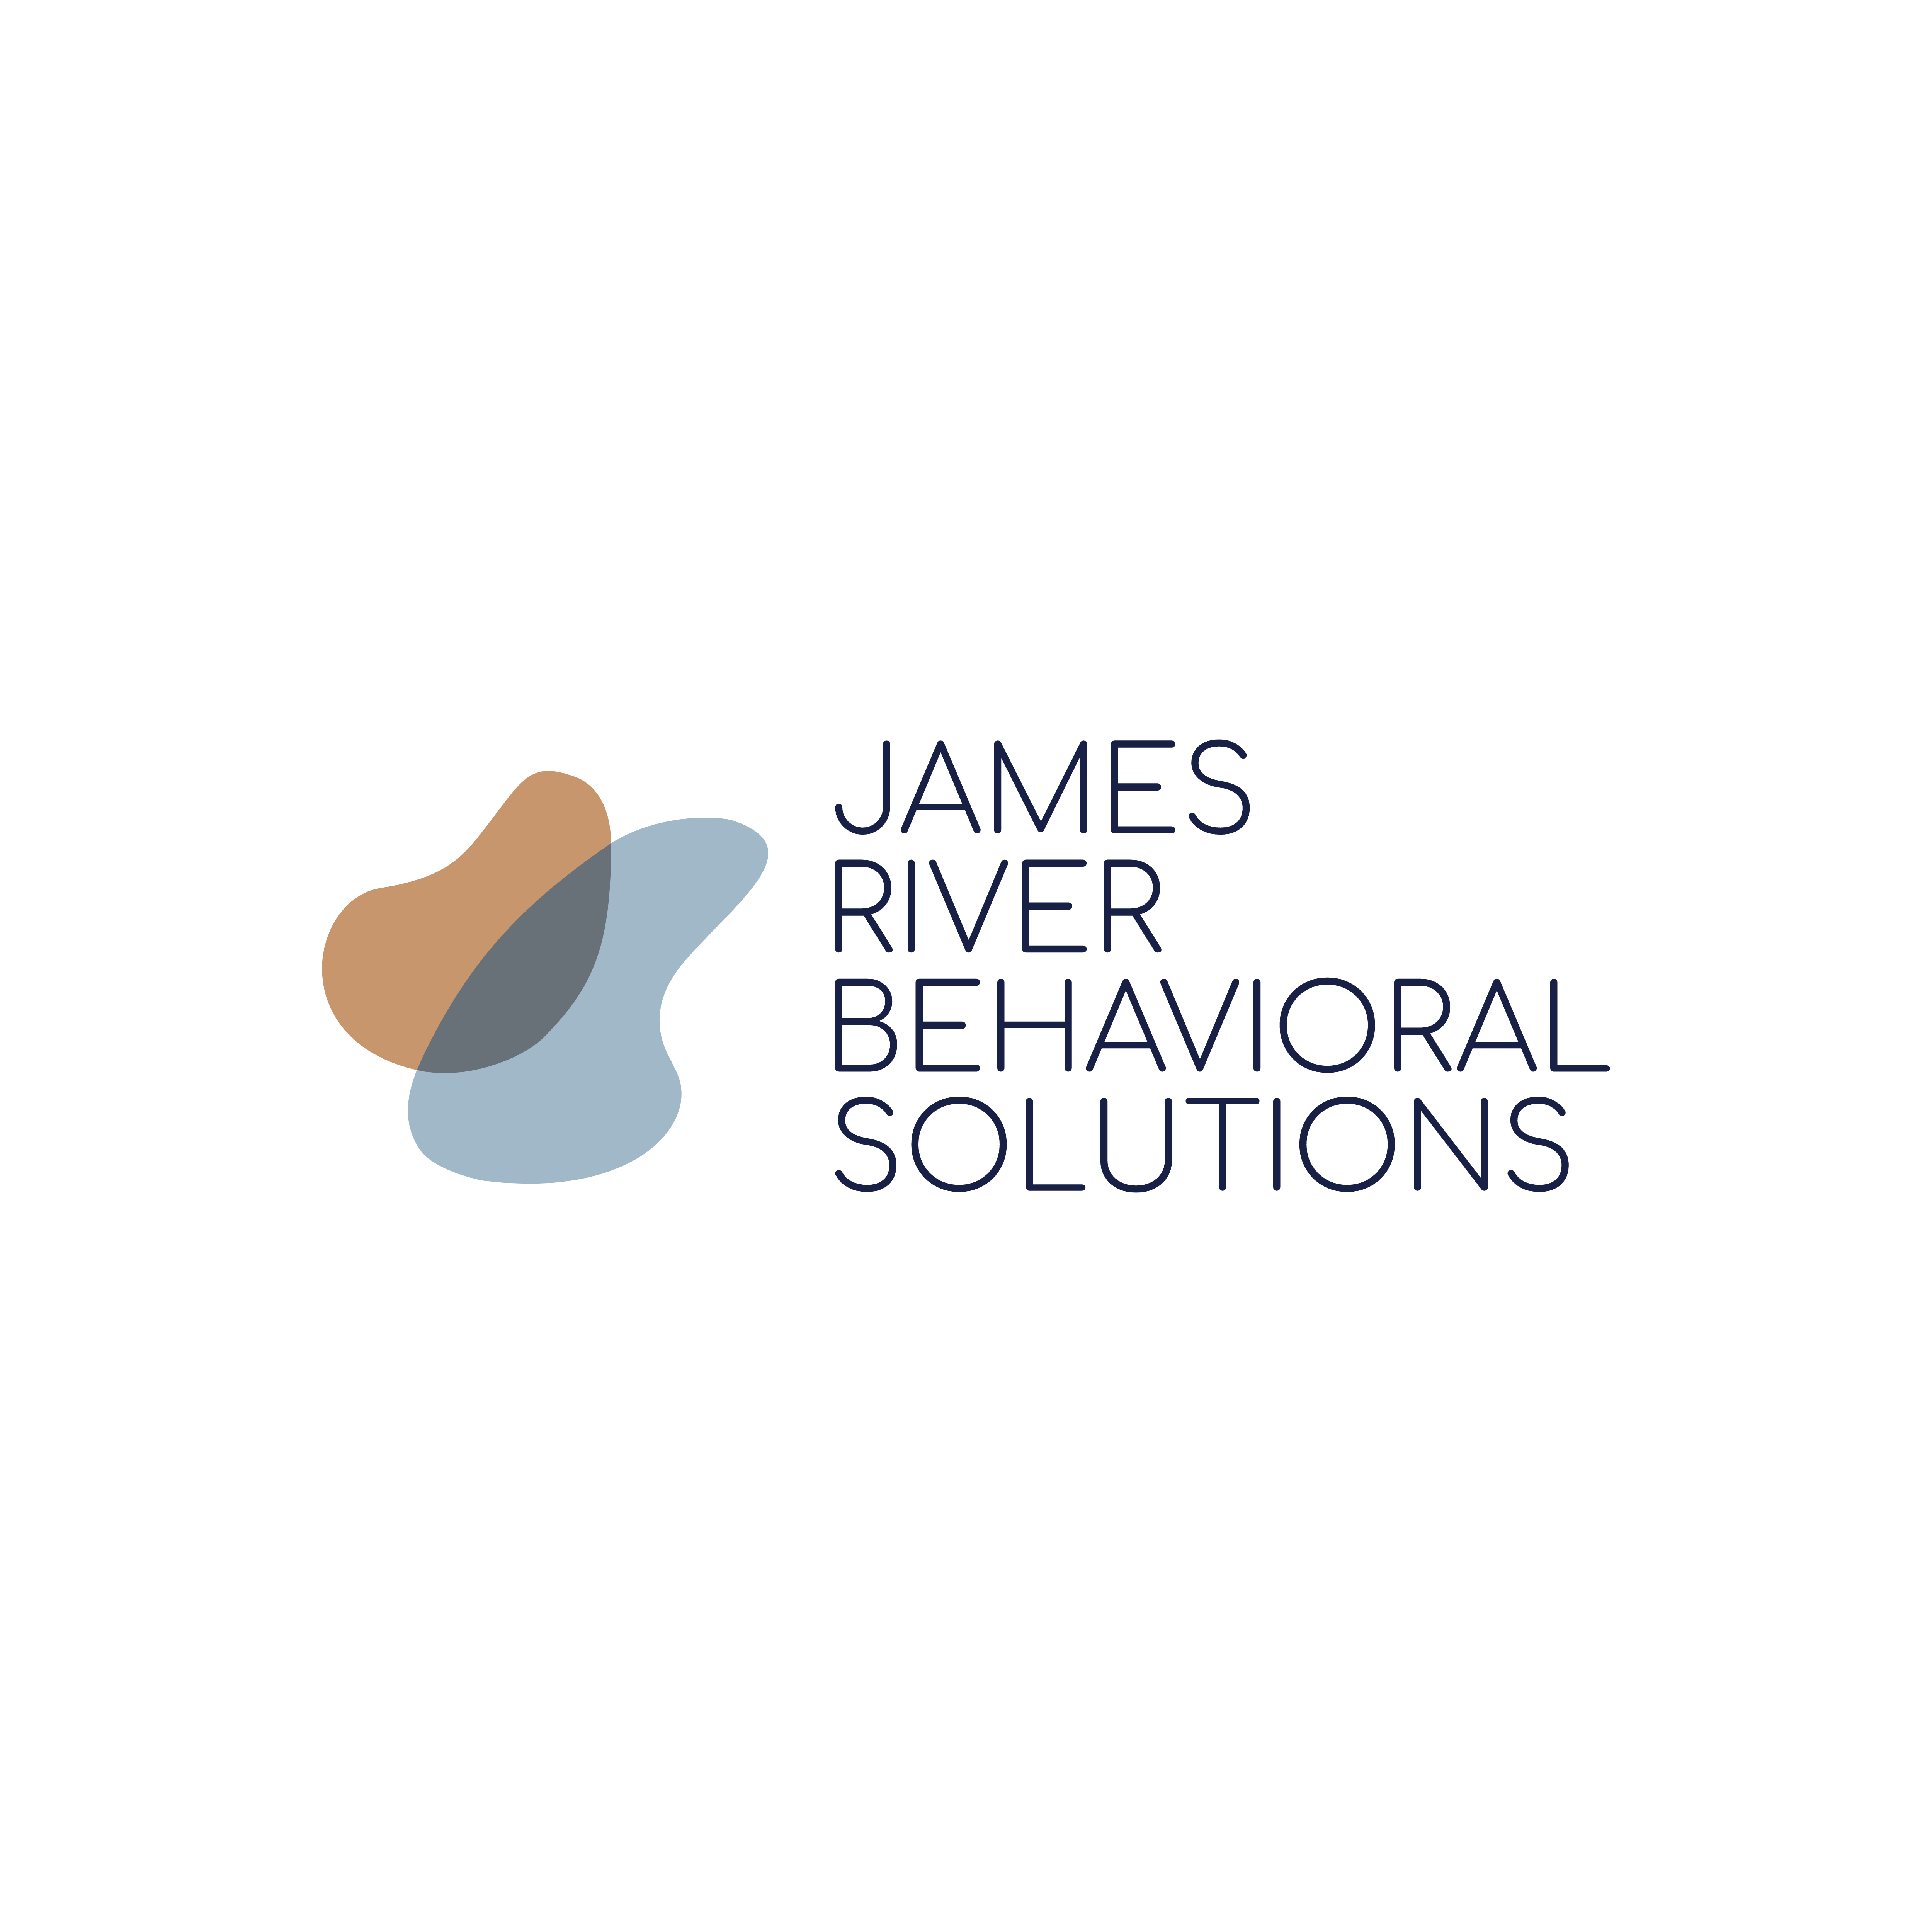 James River Behavioral Solutions